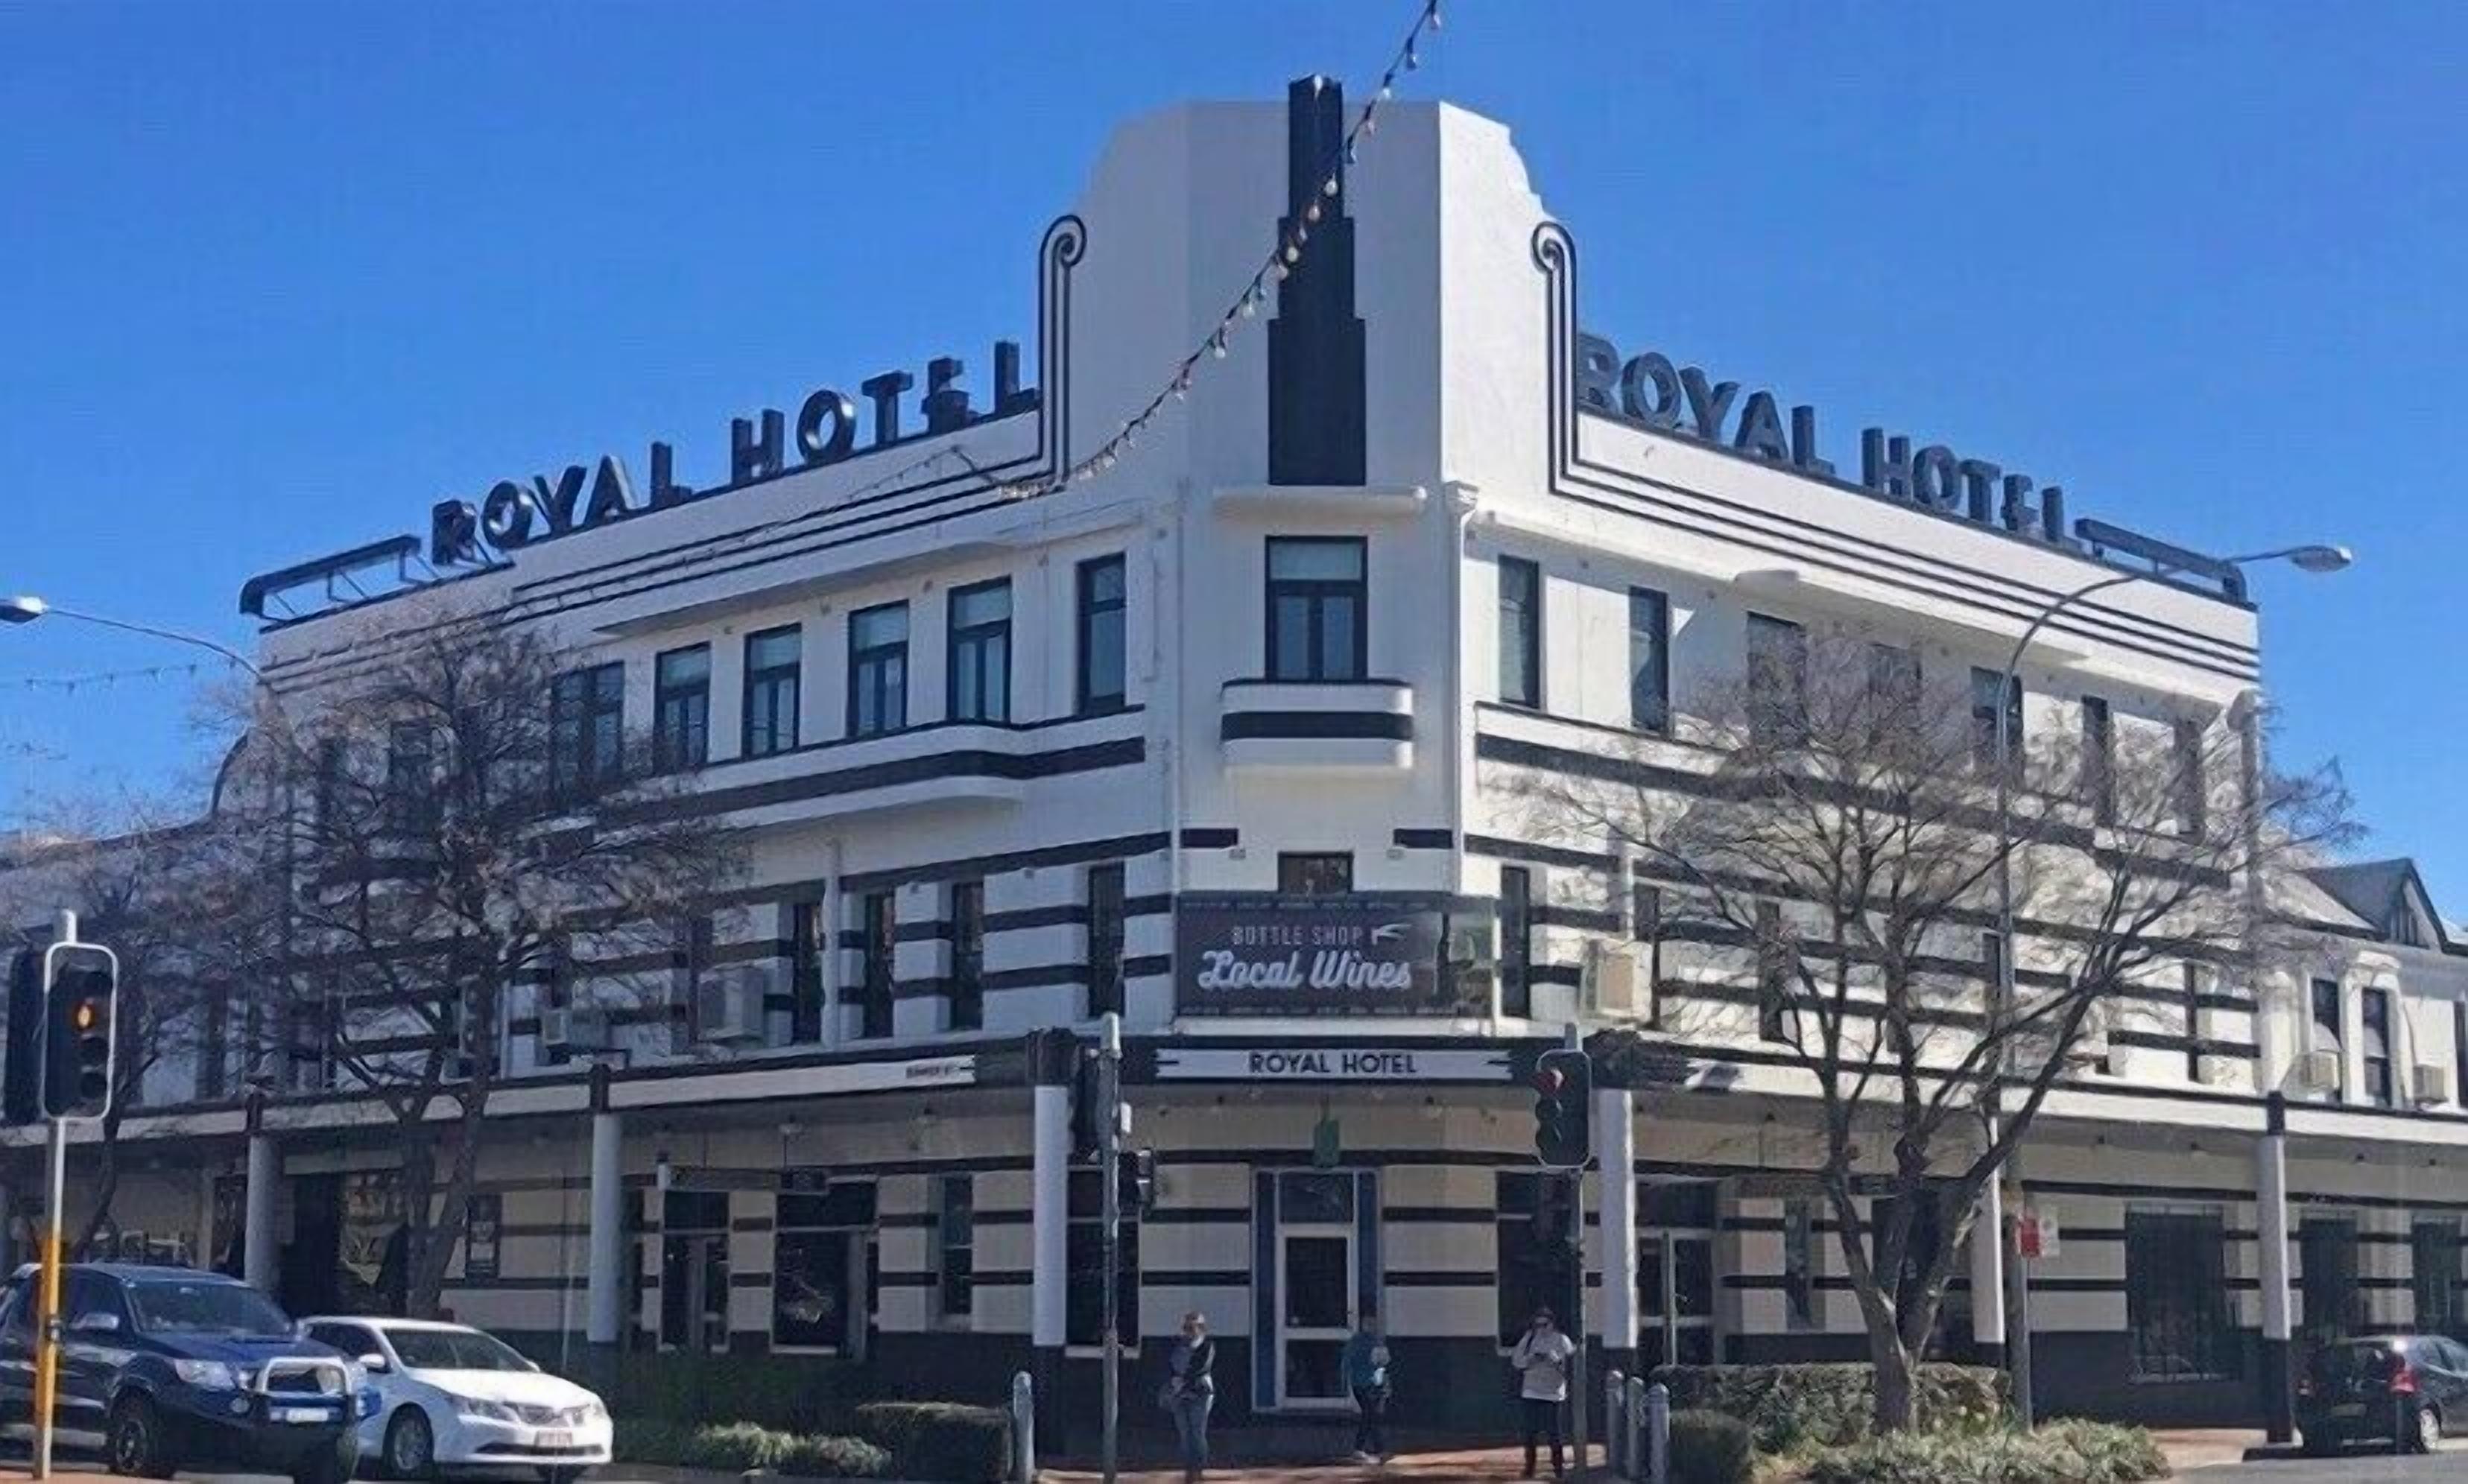 Royal Hotel Orange image 1